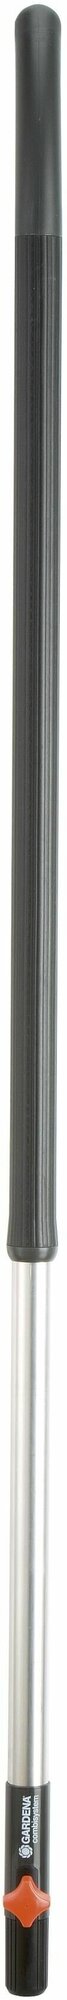 Ручка алюминиевая эргономичная (130 см) Gardena 03734-20.000.00 (комбисистема)